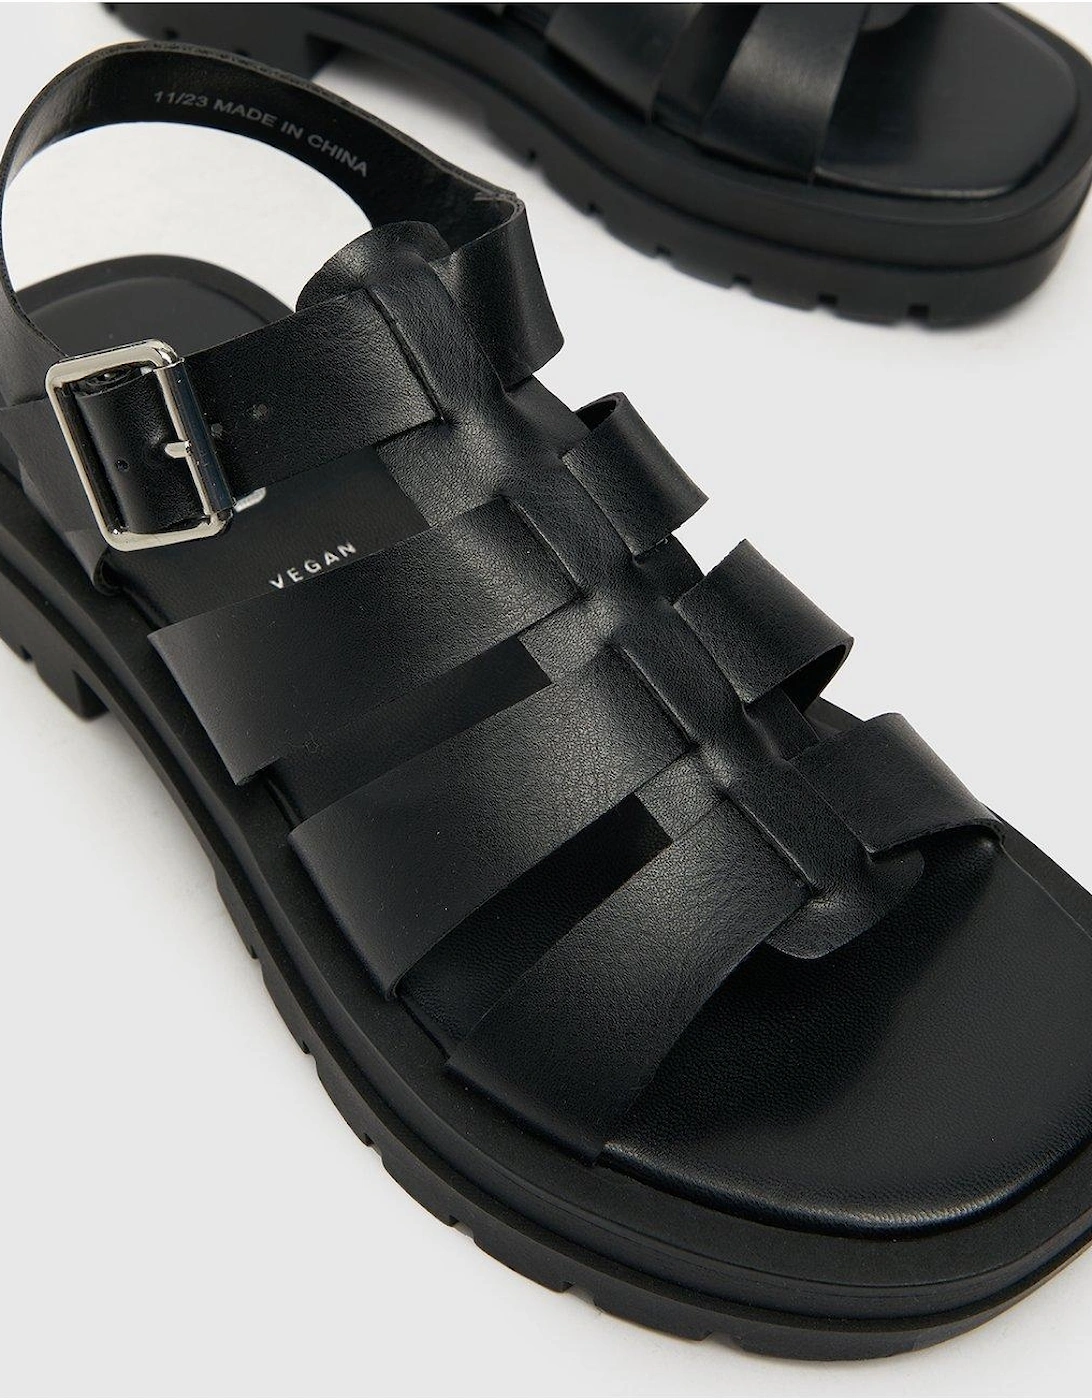 Tobin Chunky Gladiator Sandal - Black